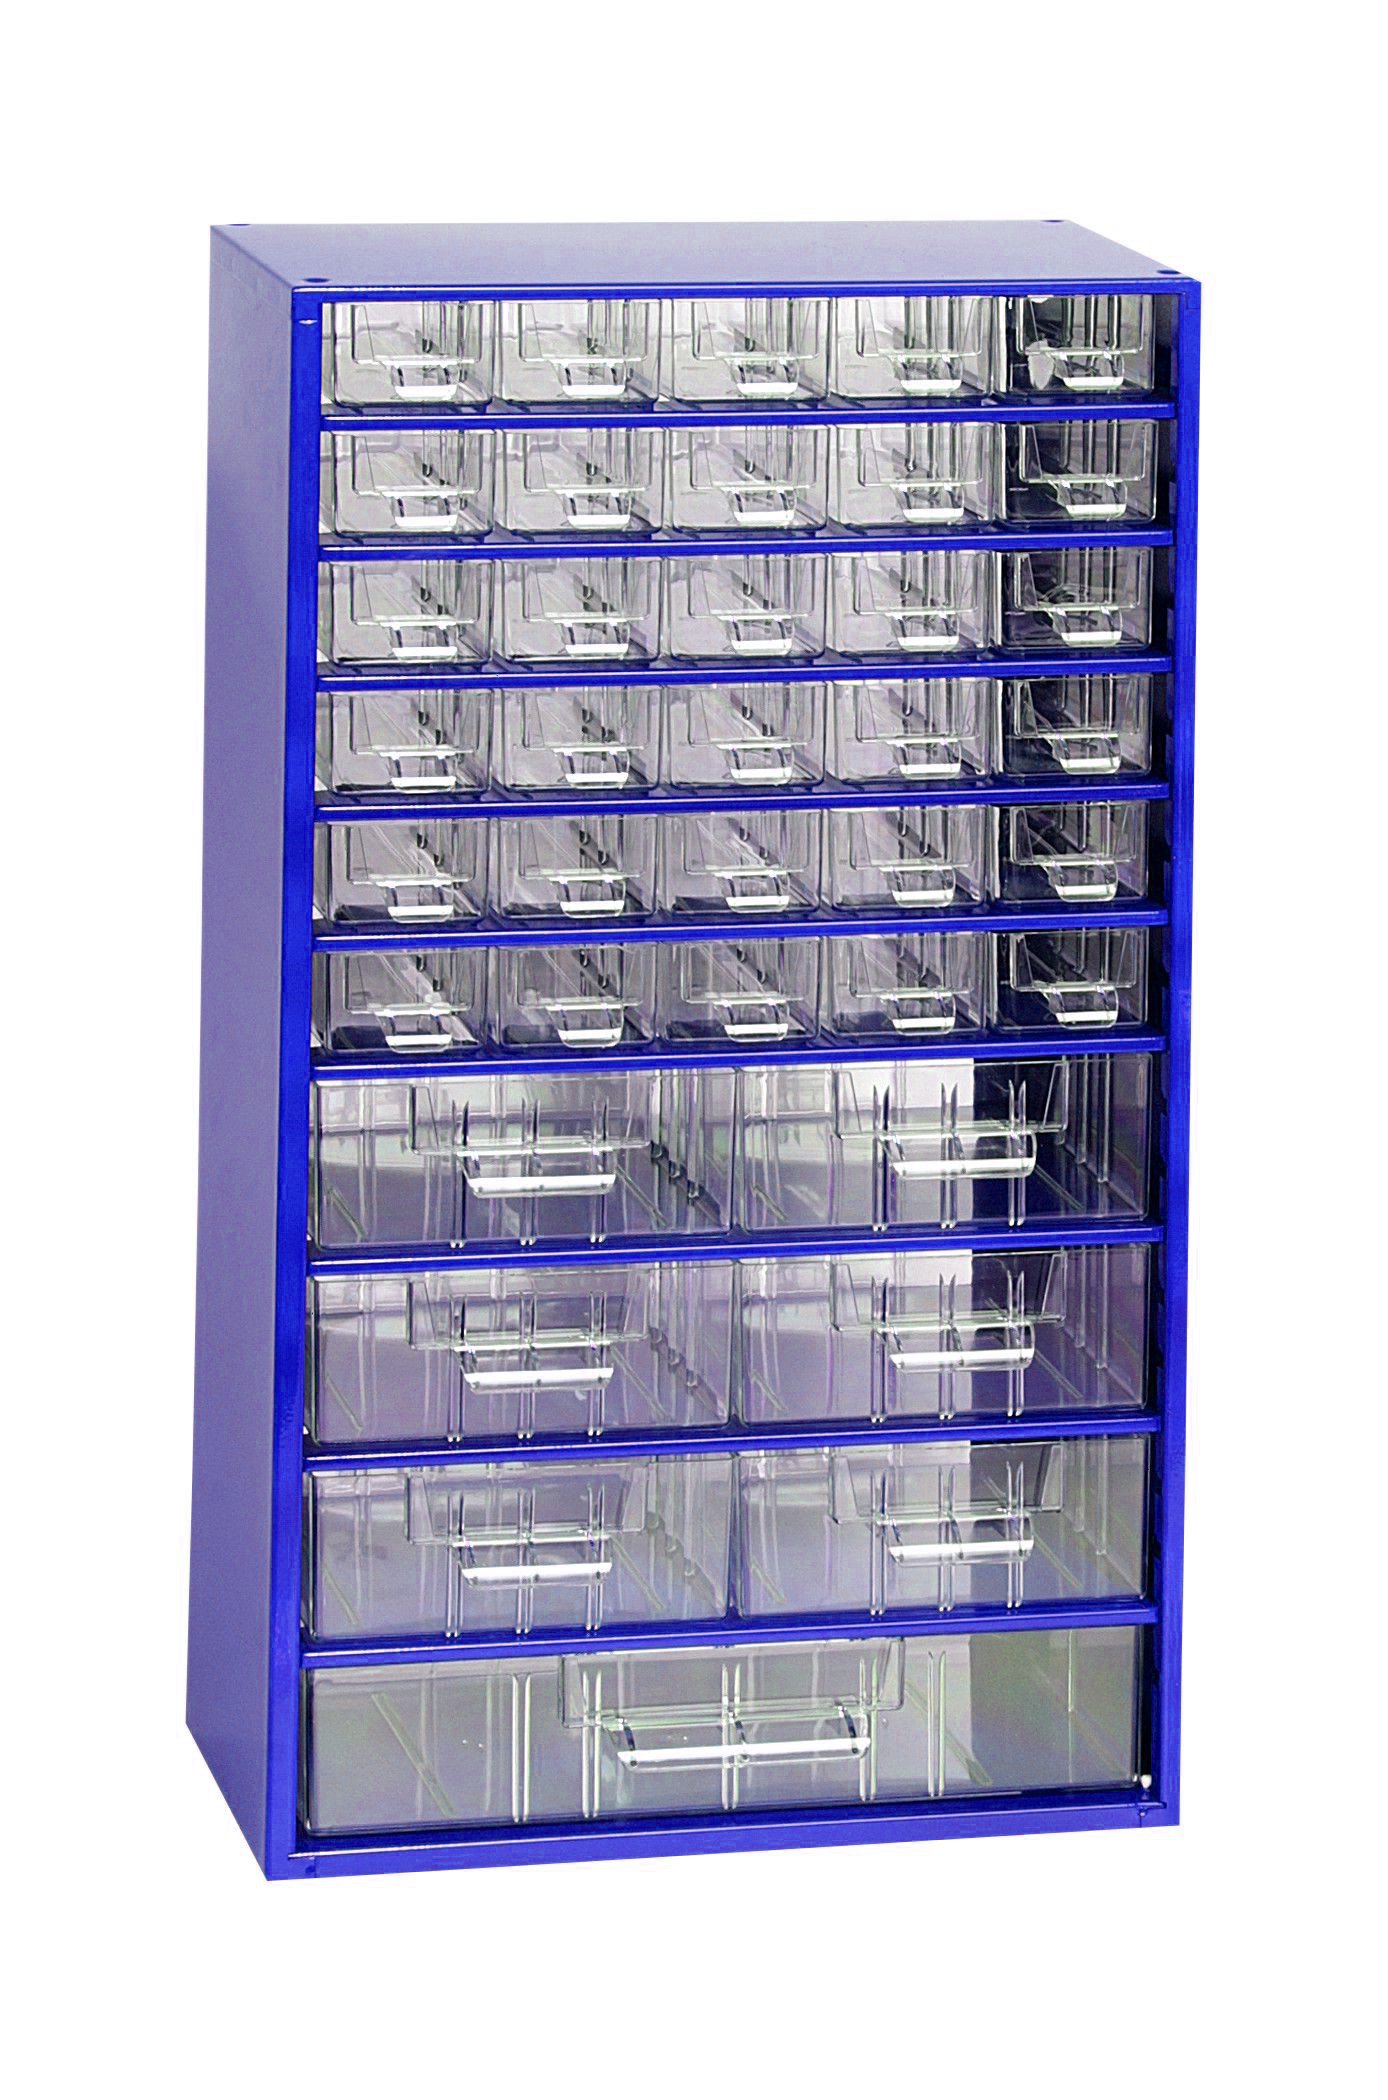 Skříňka 30x malá, 6x střední, 1x velká zásuvka modrá - Vybavení pro dům a domácnost Schránky, pokladny, skříňky Bedny, boxy ukládací, skříňky